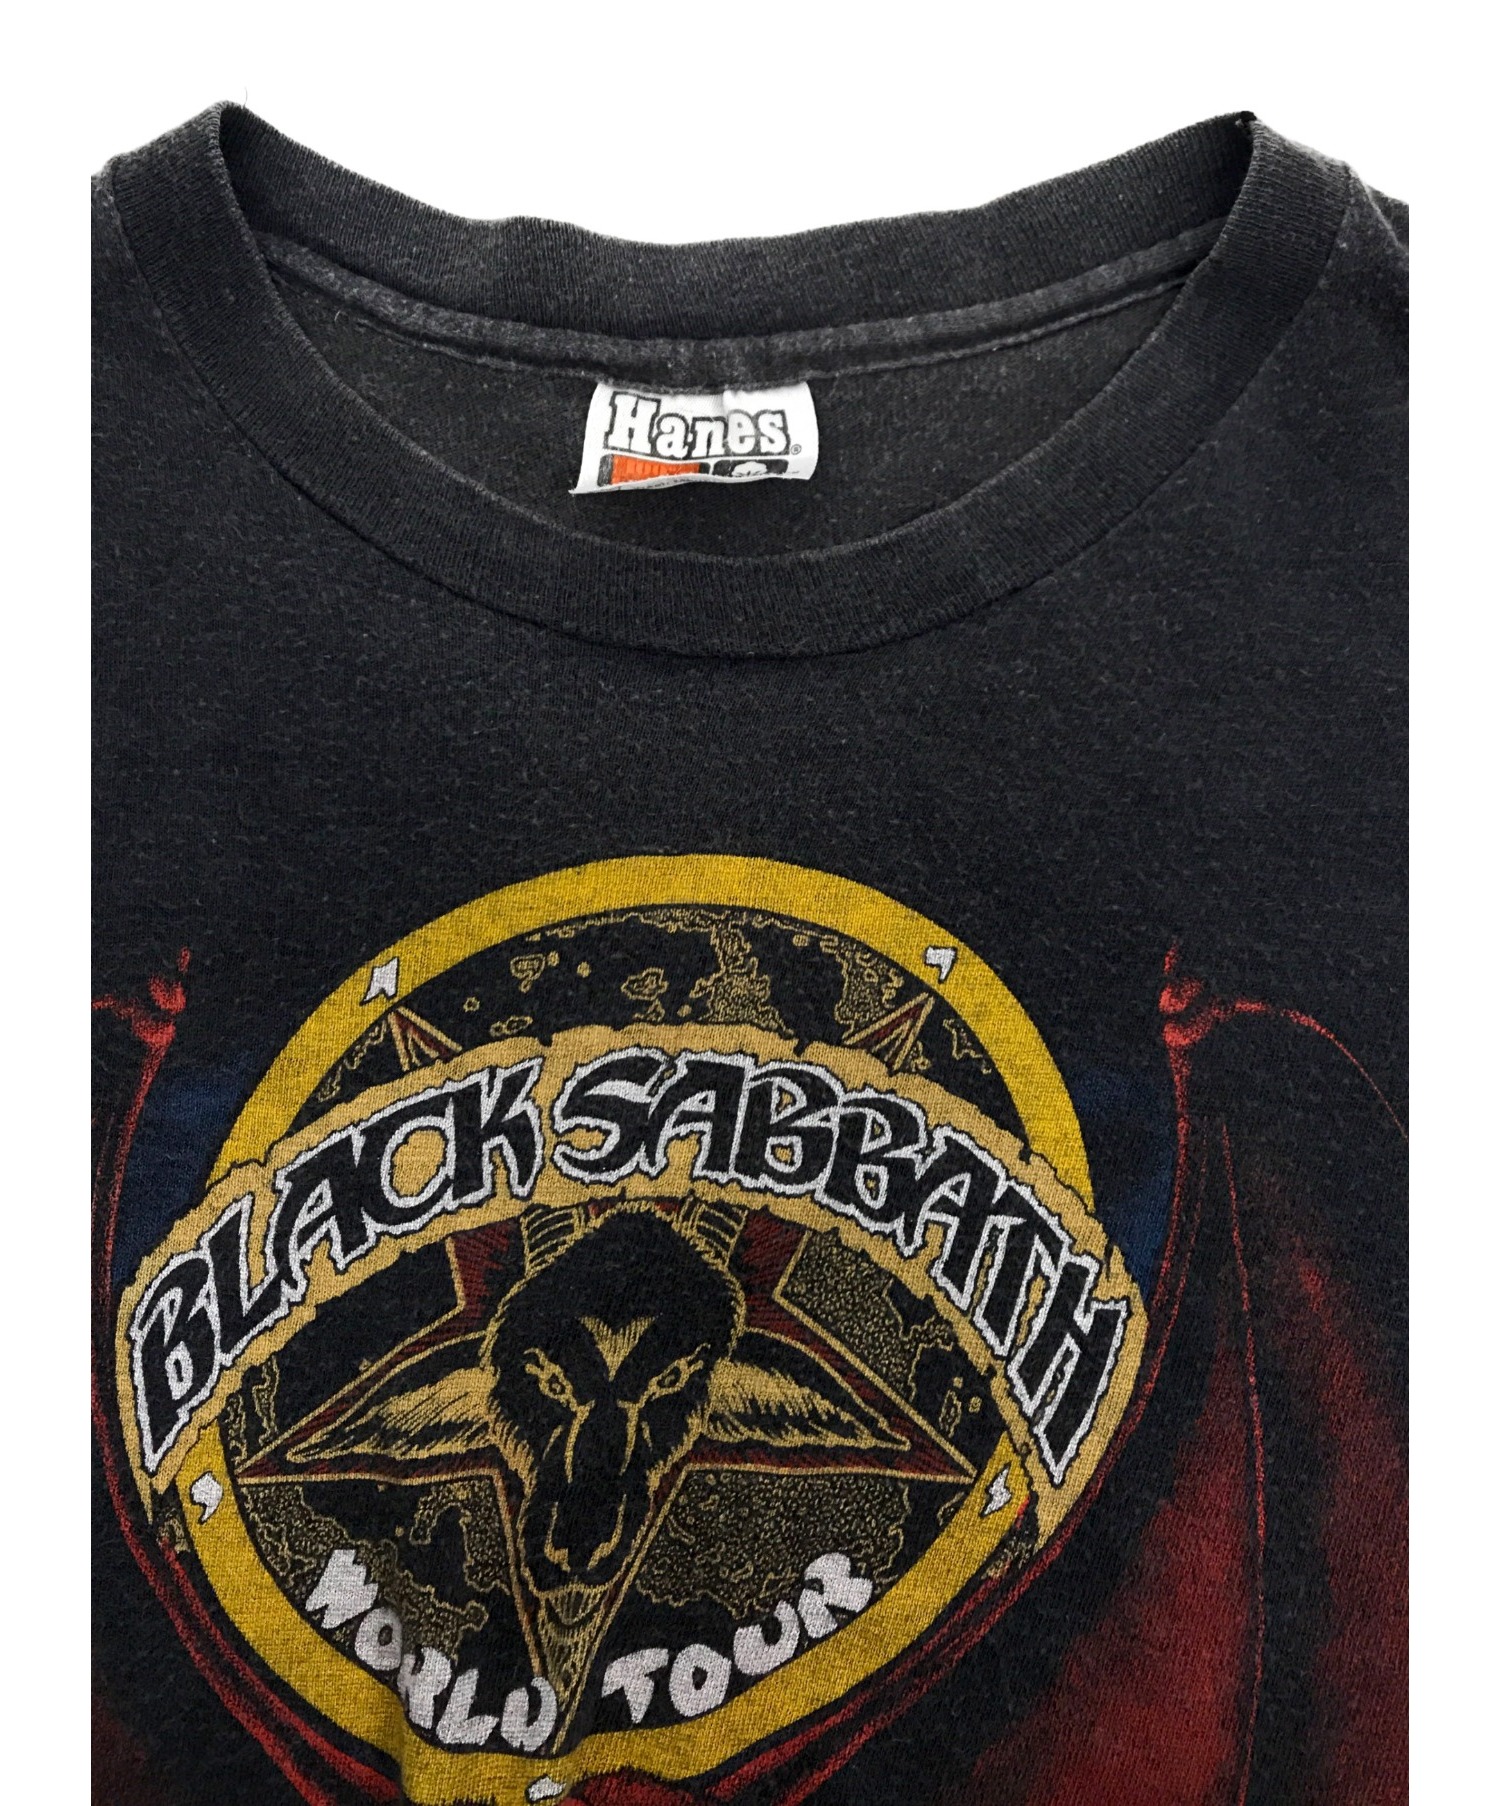 バンドTシャツ (バンドTシャツ) [古着]Black SabbathバンドTシャツ ブラック サイズ:M38-40 ブラックサバス　 1981年コピーライト 悪魔のおきて